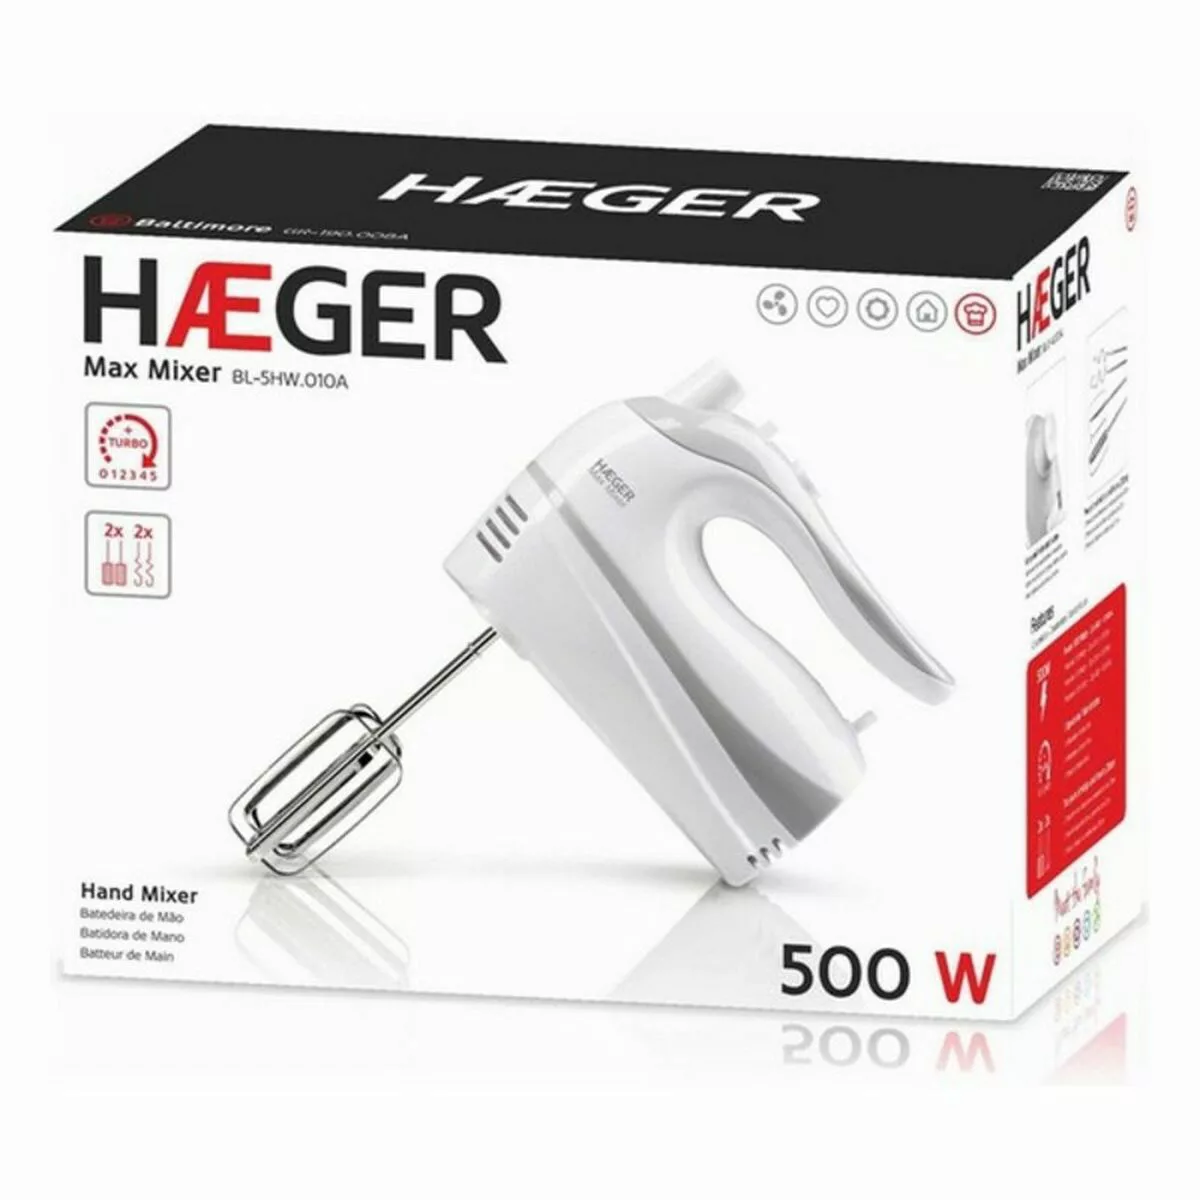 Mixer Haeger Max Mixer 500 W günstig online kaufen